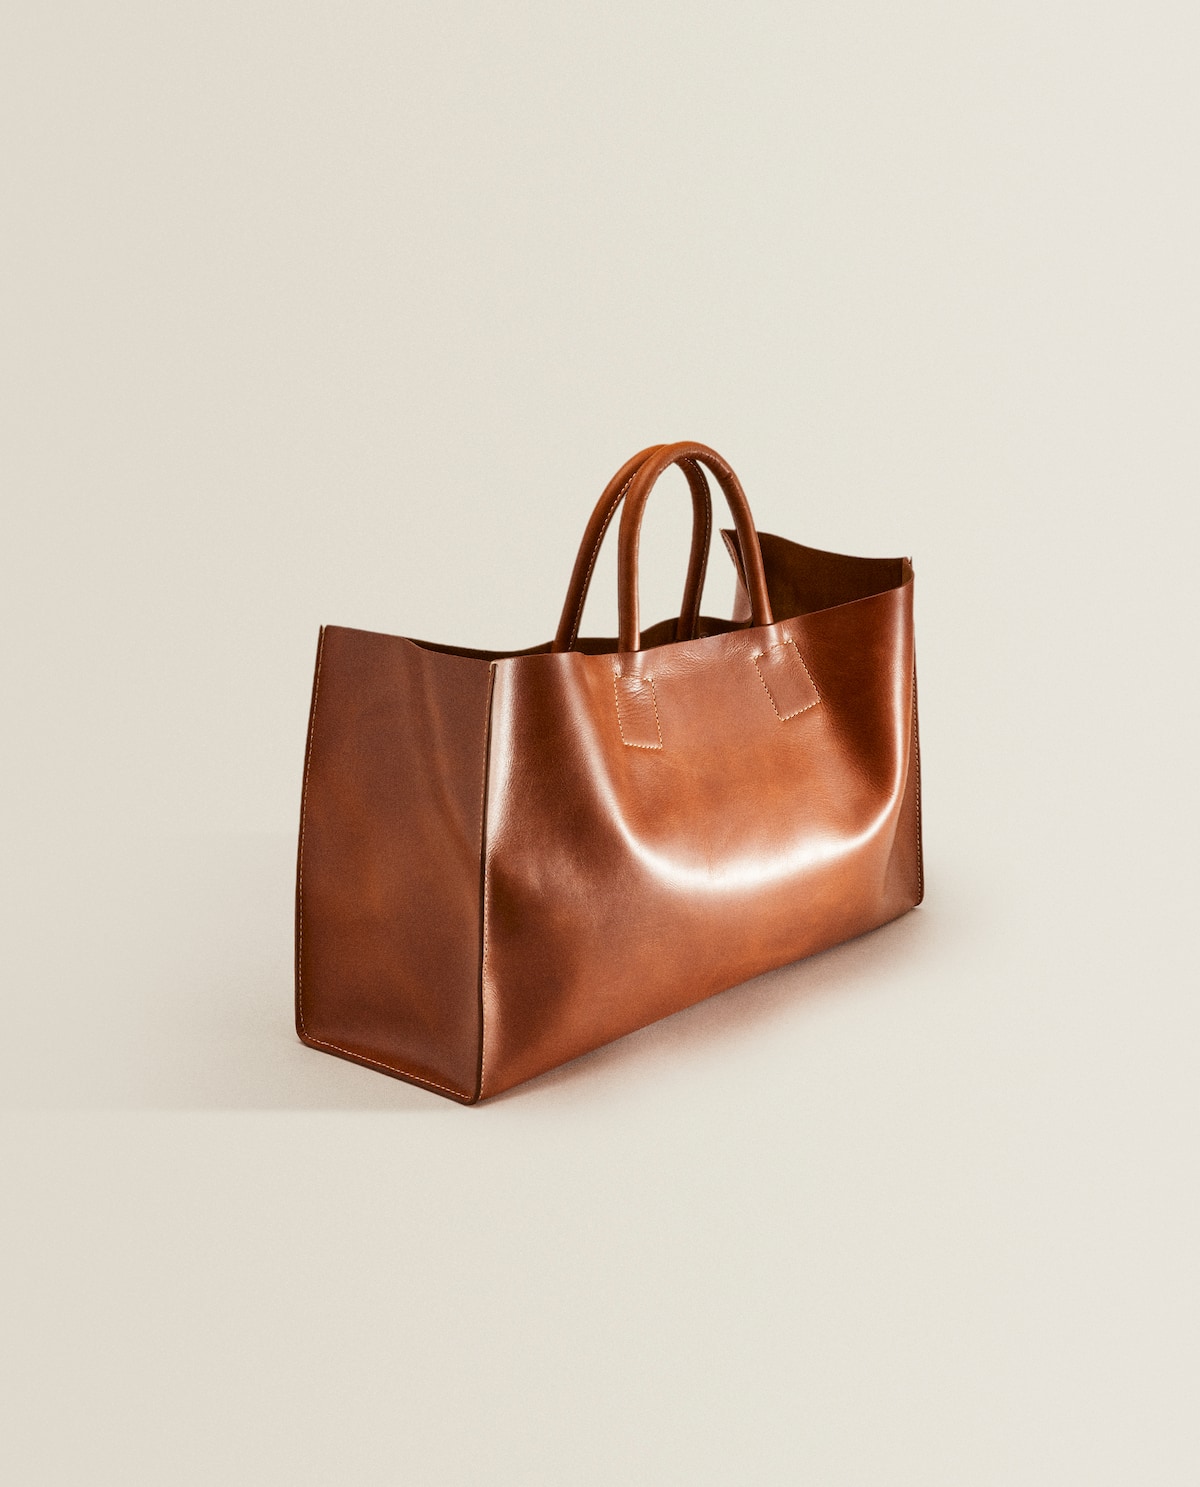 Zara El tacto y el minimalista de este bolso piel son indescriptibles